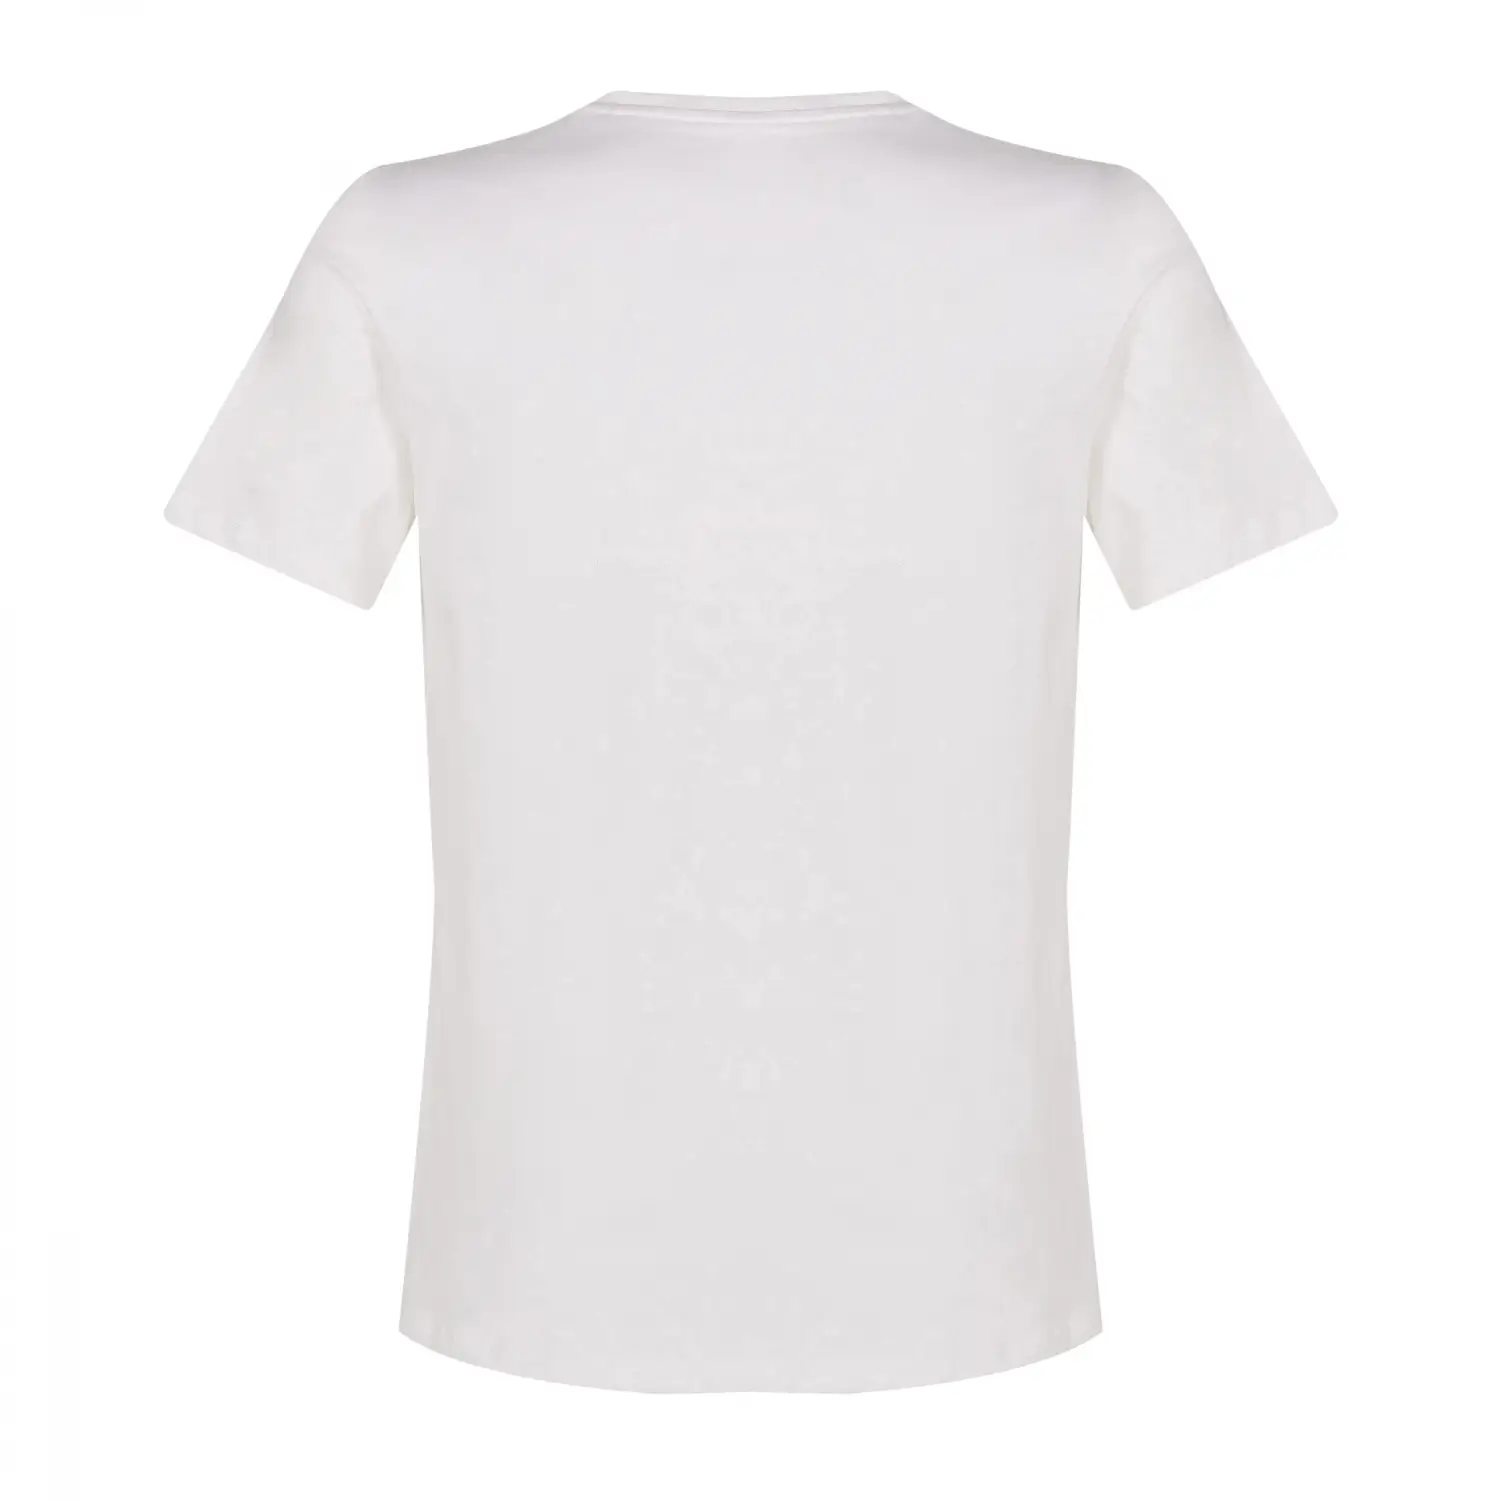 New Balance Lifestyle Beyaz Erkek Tişört - MPT1295-WT